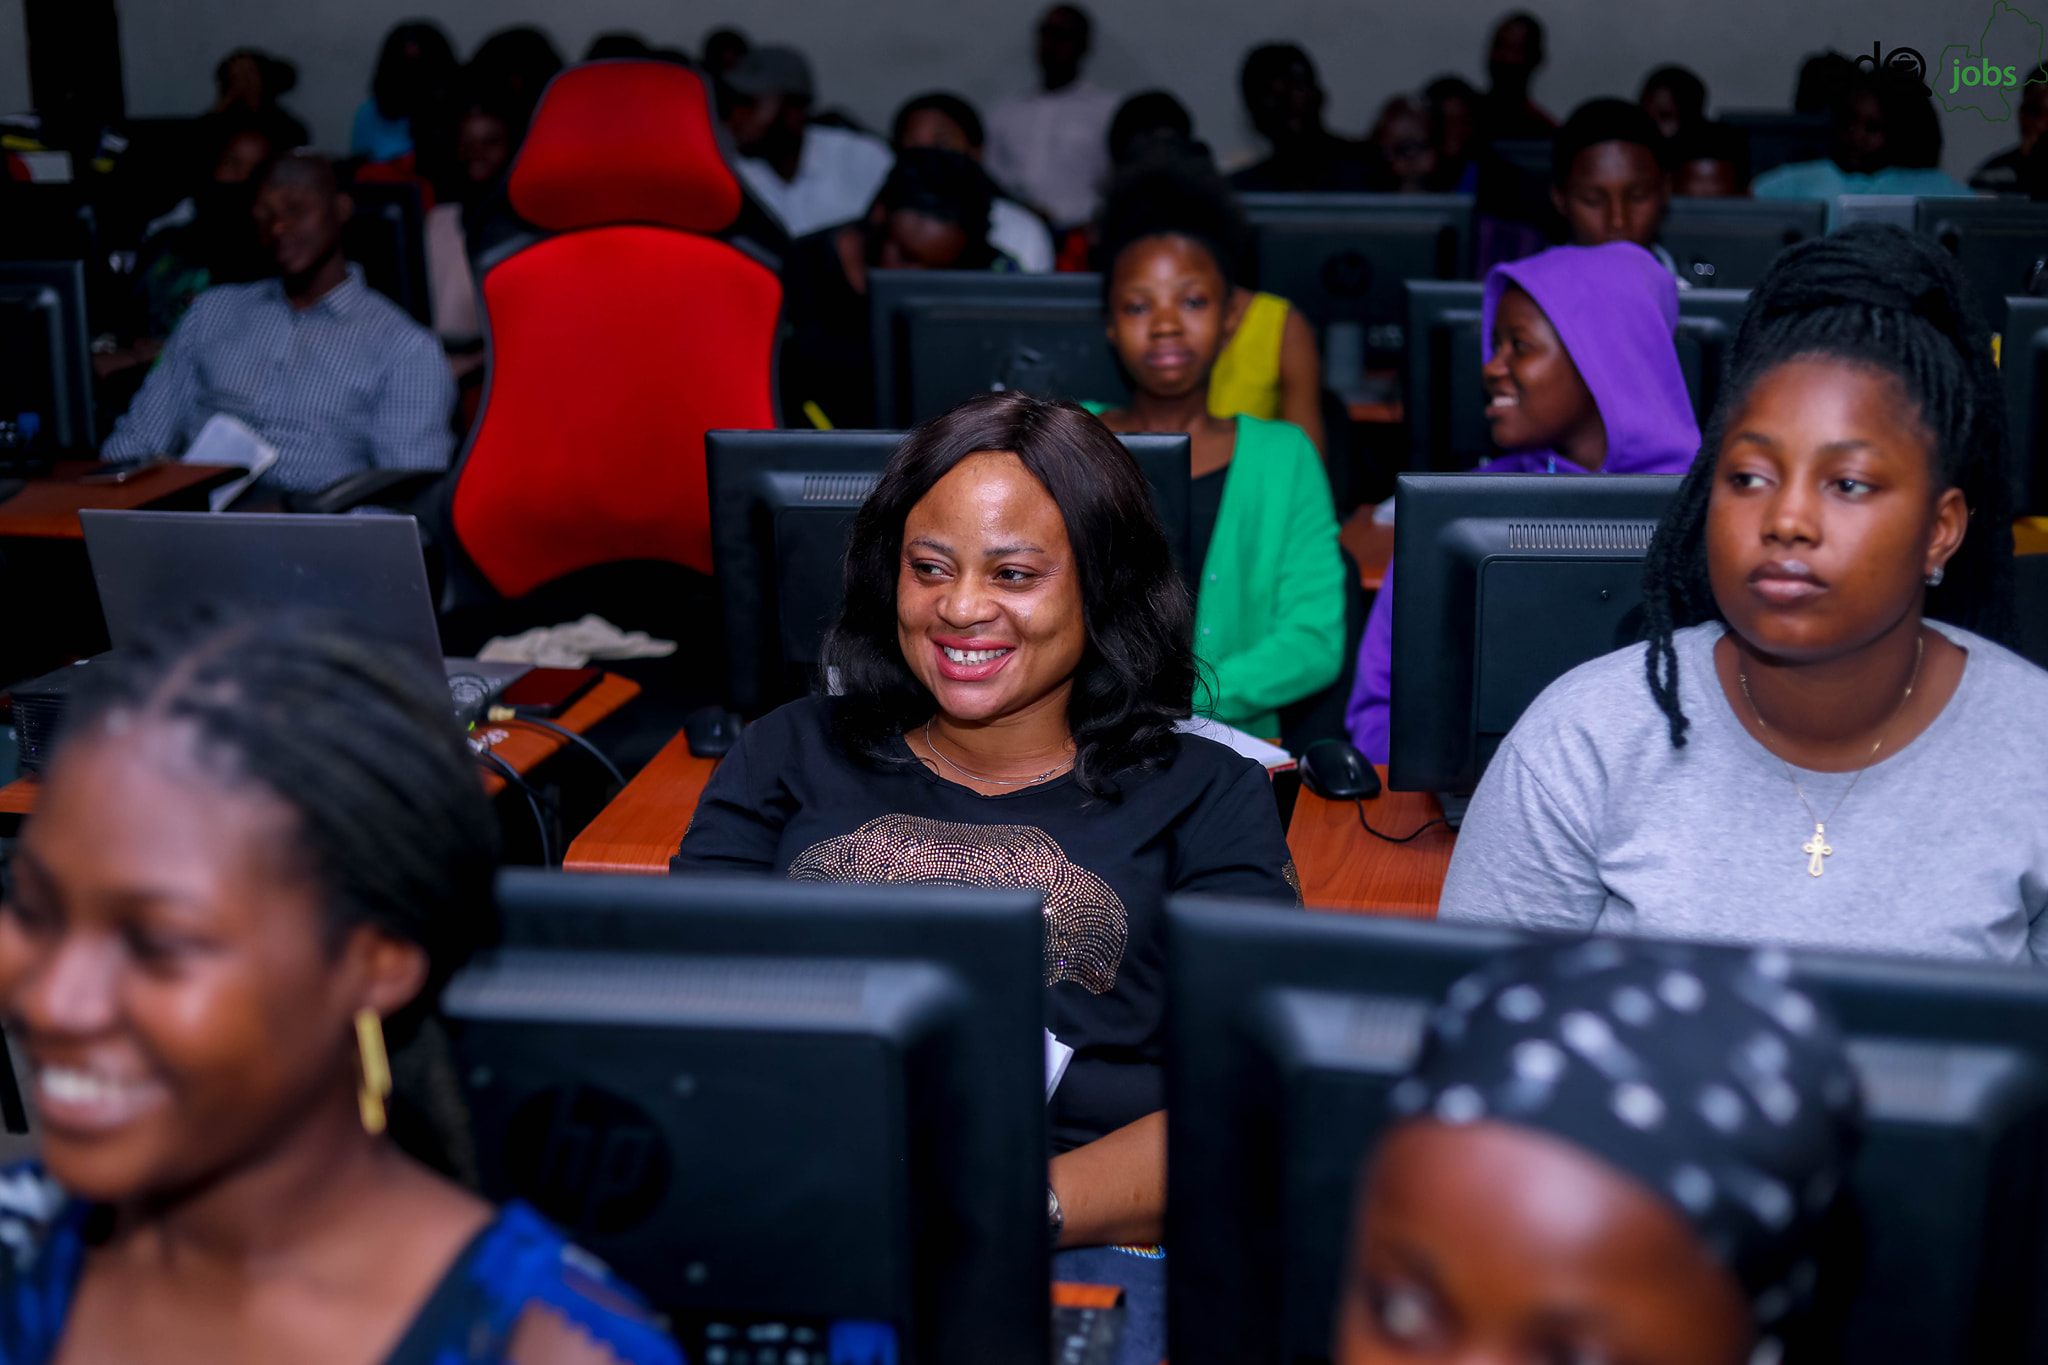 Edo, Udacity commence training of 800 women in web development, data analytics, others